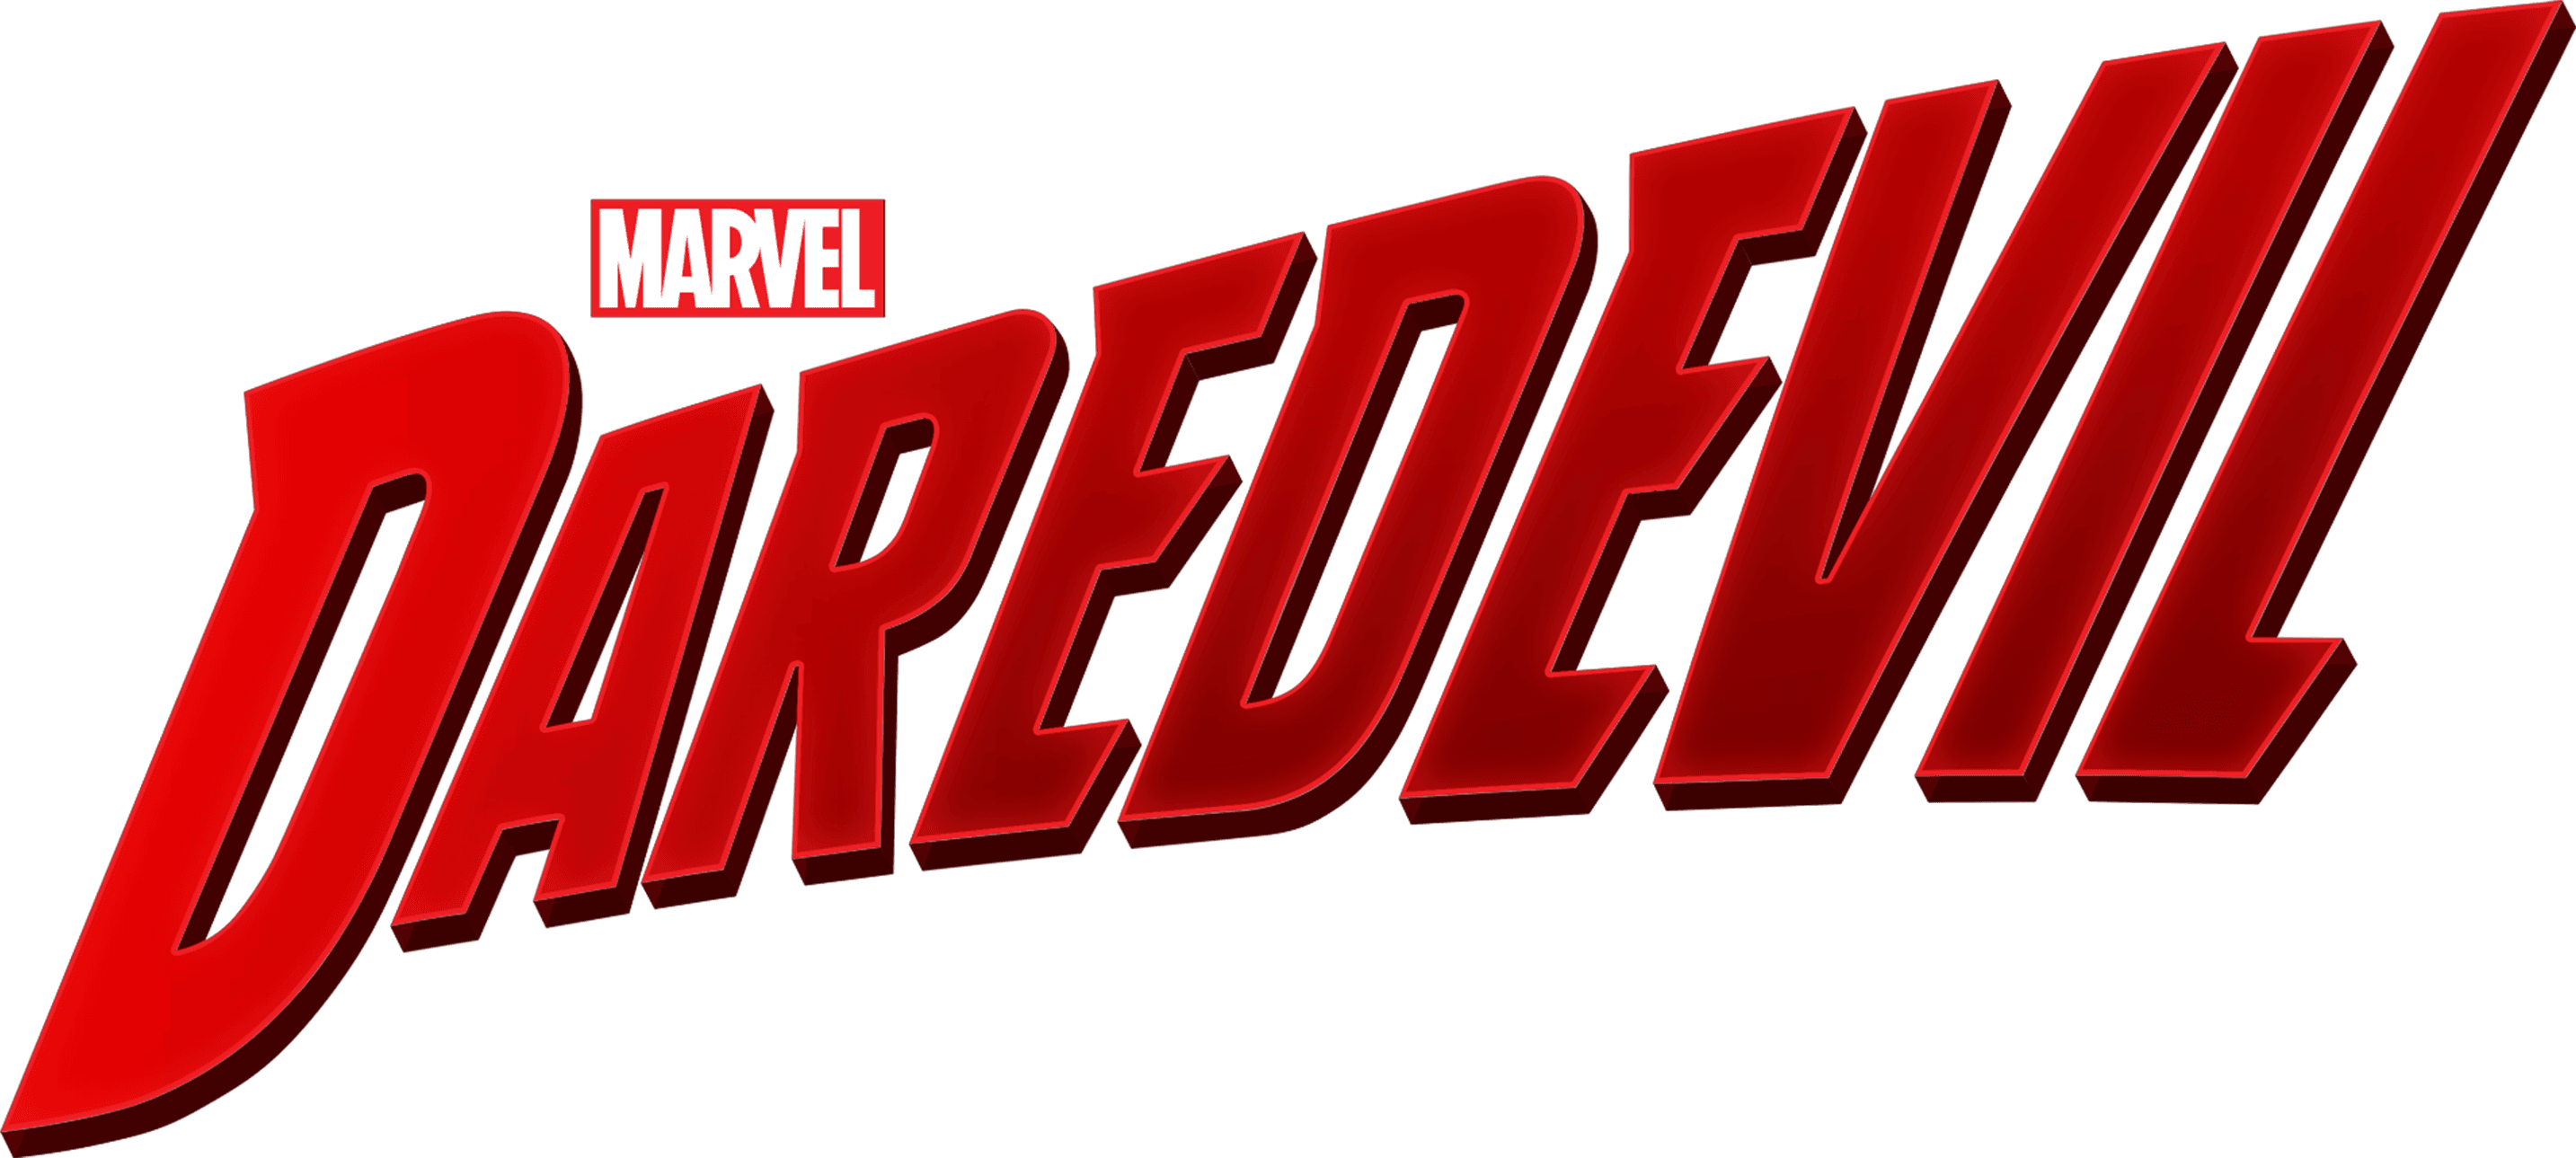 Marvel's Daredevil logo